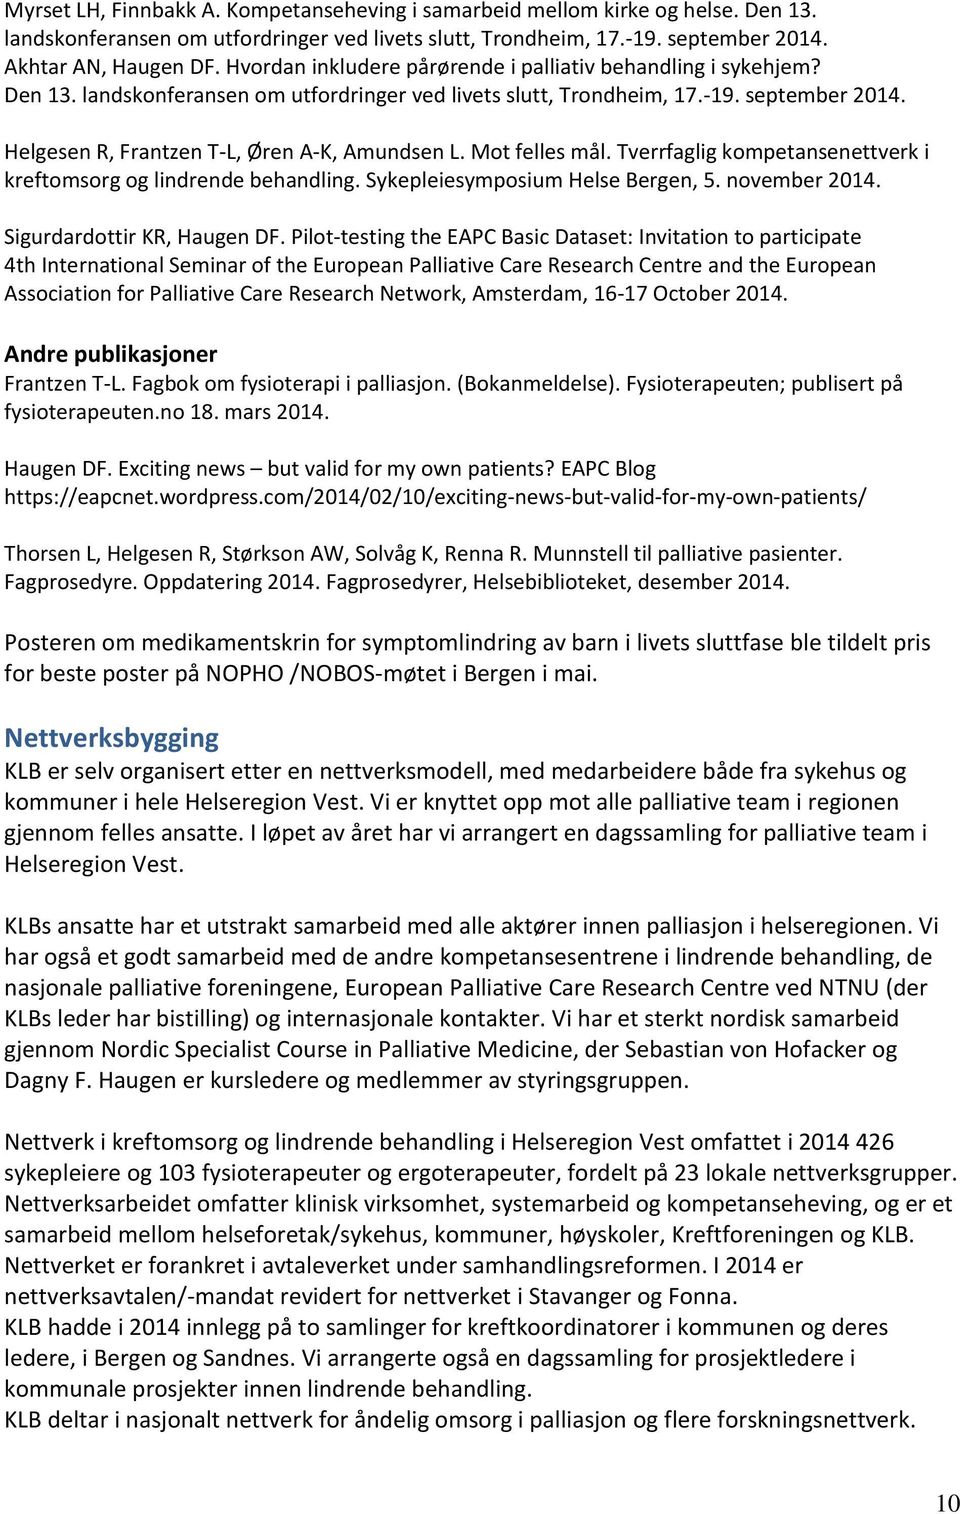 Helgesen R, Frantzen T-L, Øren A-K, Amundsen L. Mot felles mål. Tverrfaglig kompetansenettverk i kreftomsorg og lindrende behandling. Sykepleiesymposium Helse Bergen, 5. november 2014.